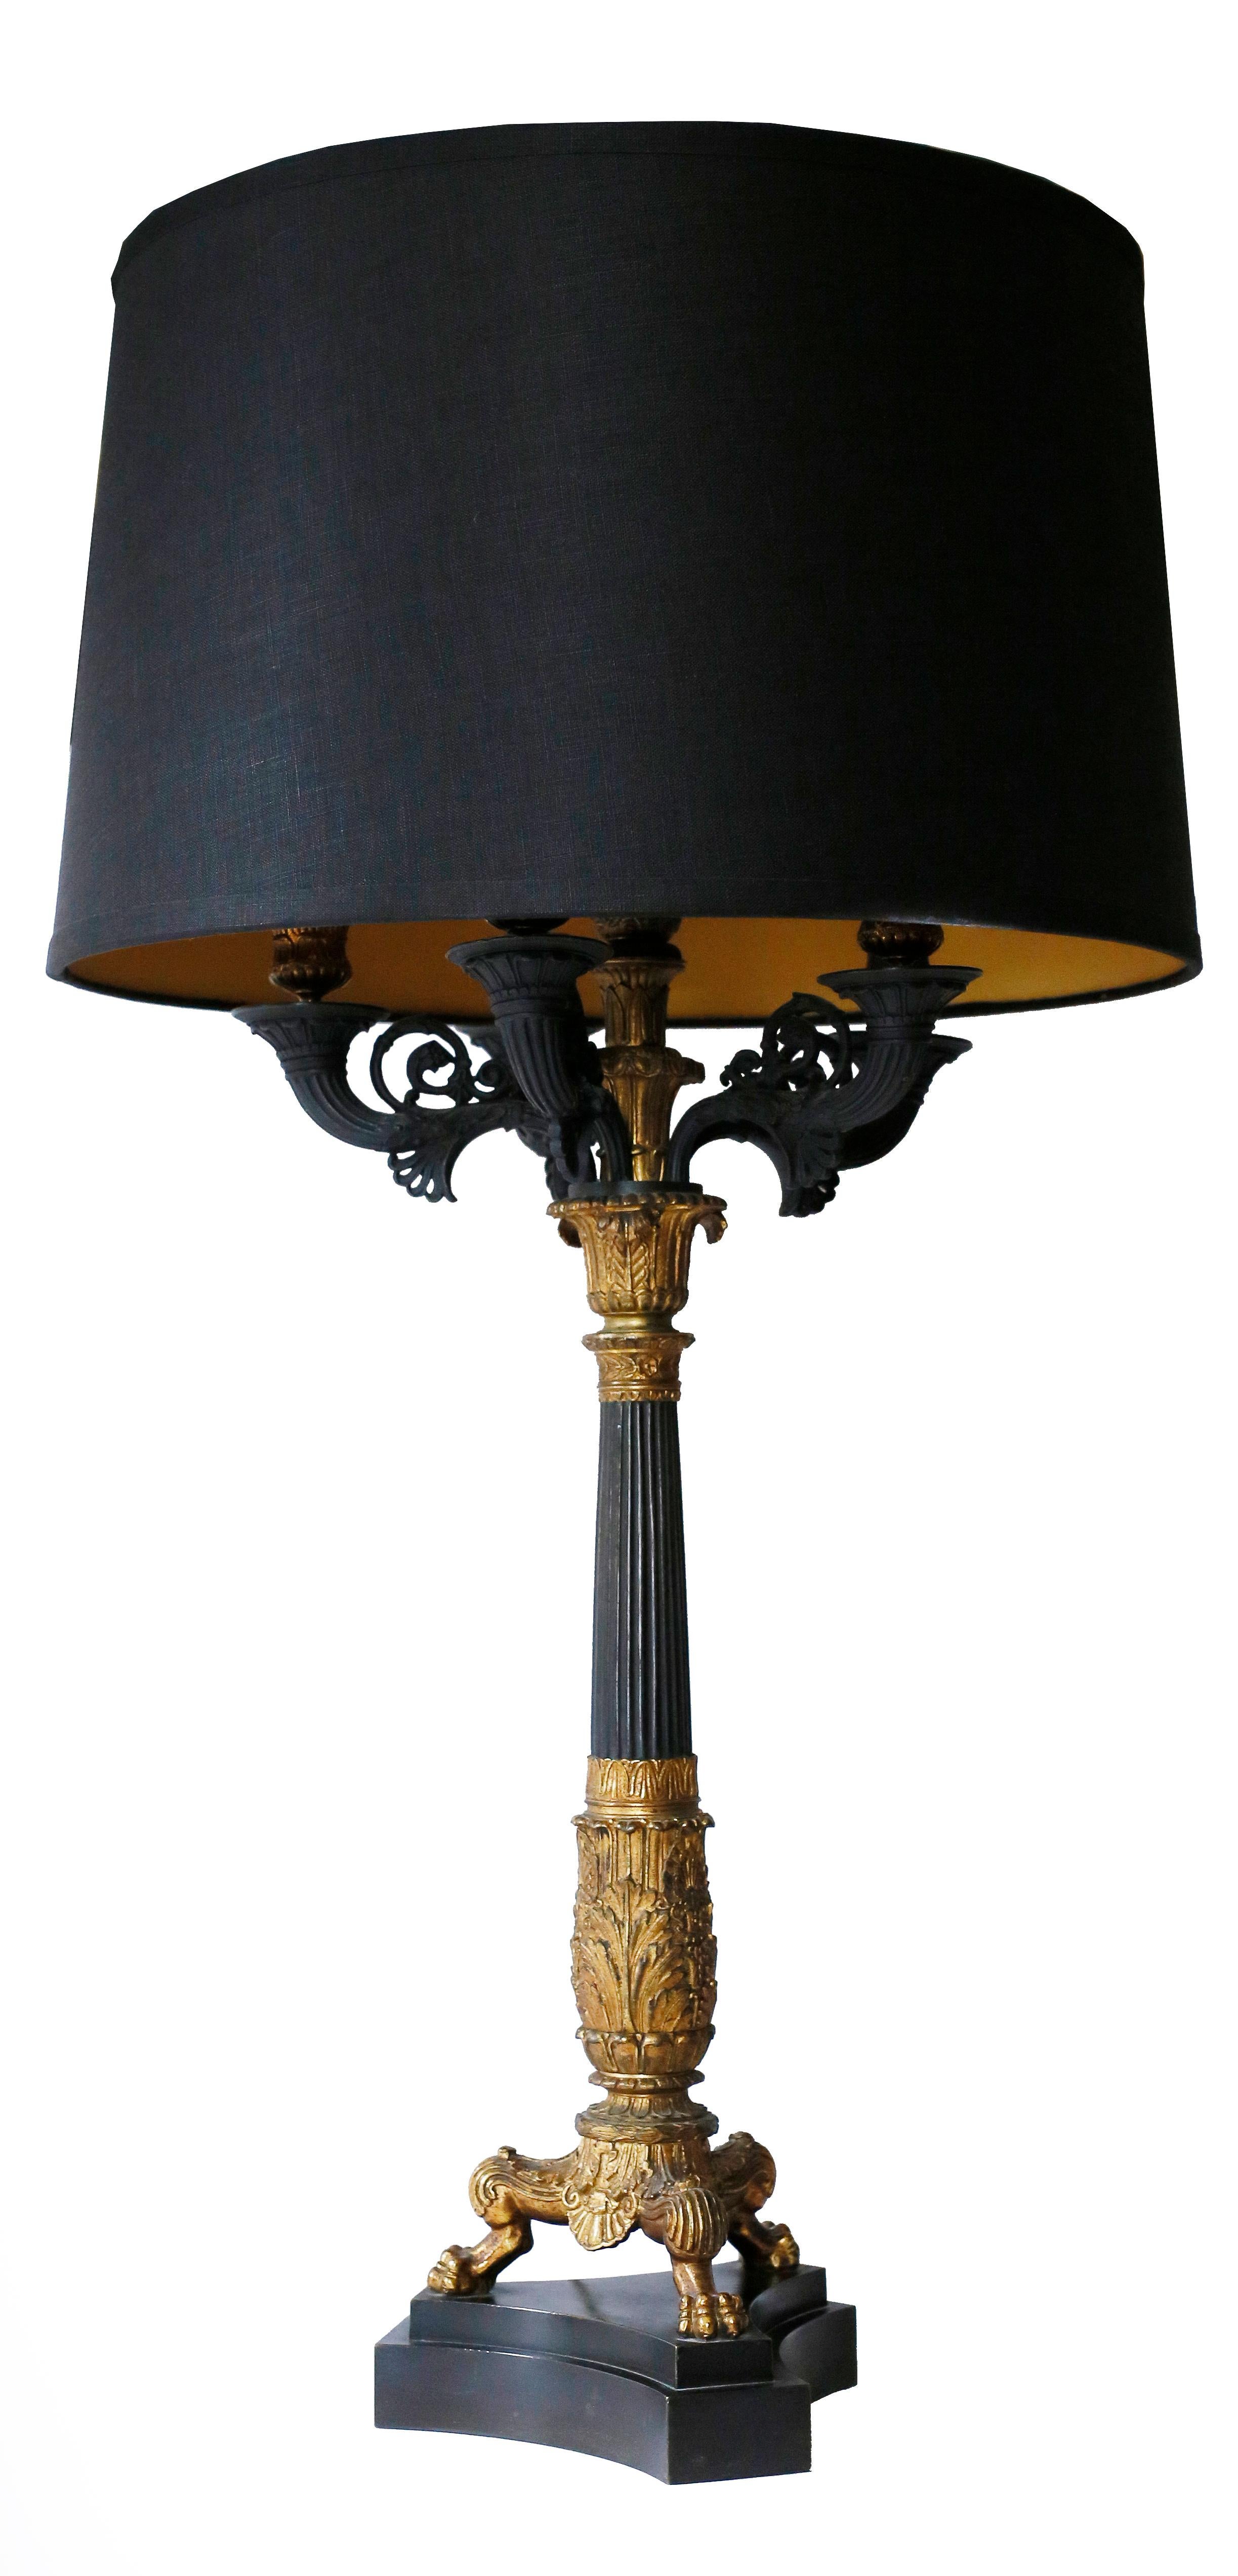 Une belle paire de lampes néoclassiques balustres en bronze patiné avec des détails en or. Une base en pierre basaltique noire supporte un trépied à pattes avec un balustre détaillé de cannelures et d'acanthes. Les supports de bougies à cinq